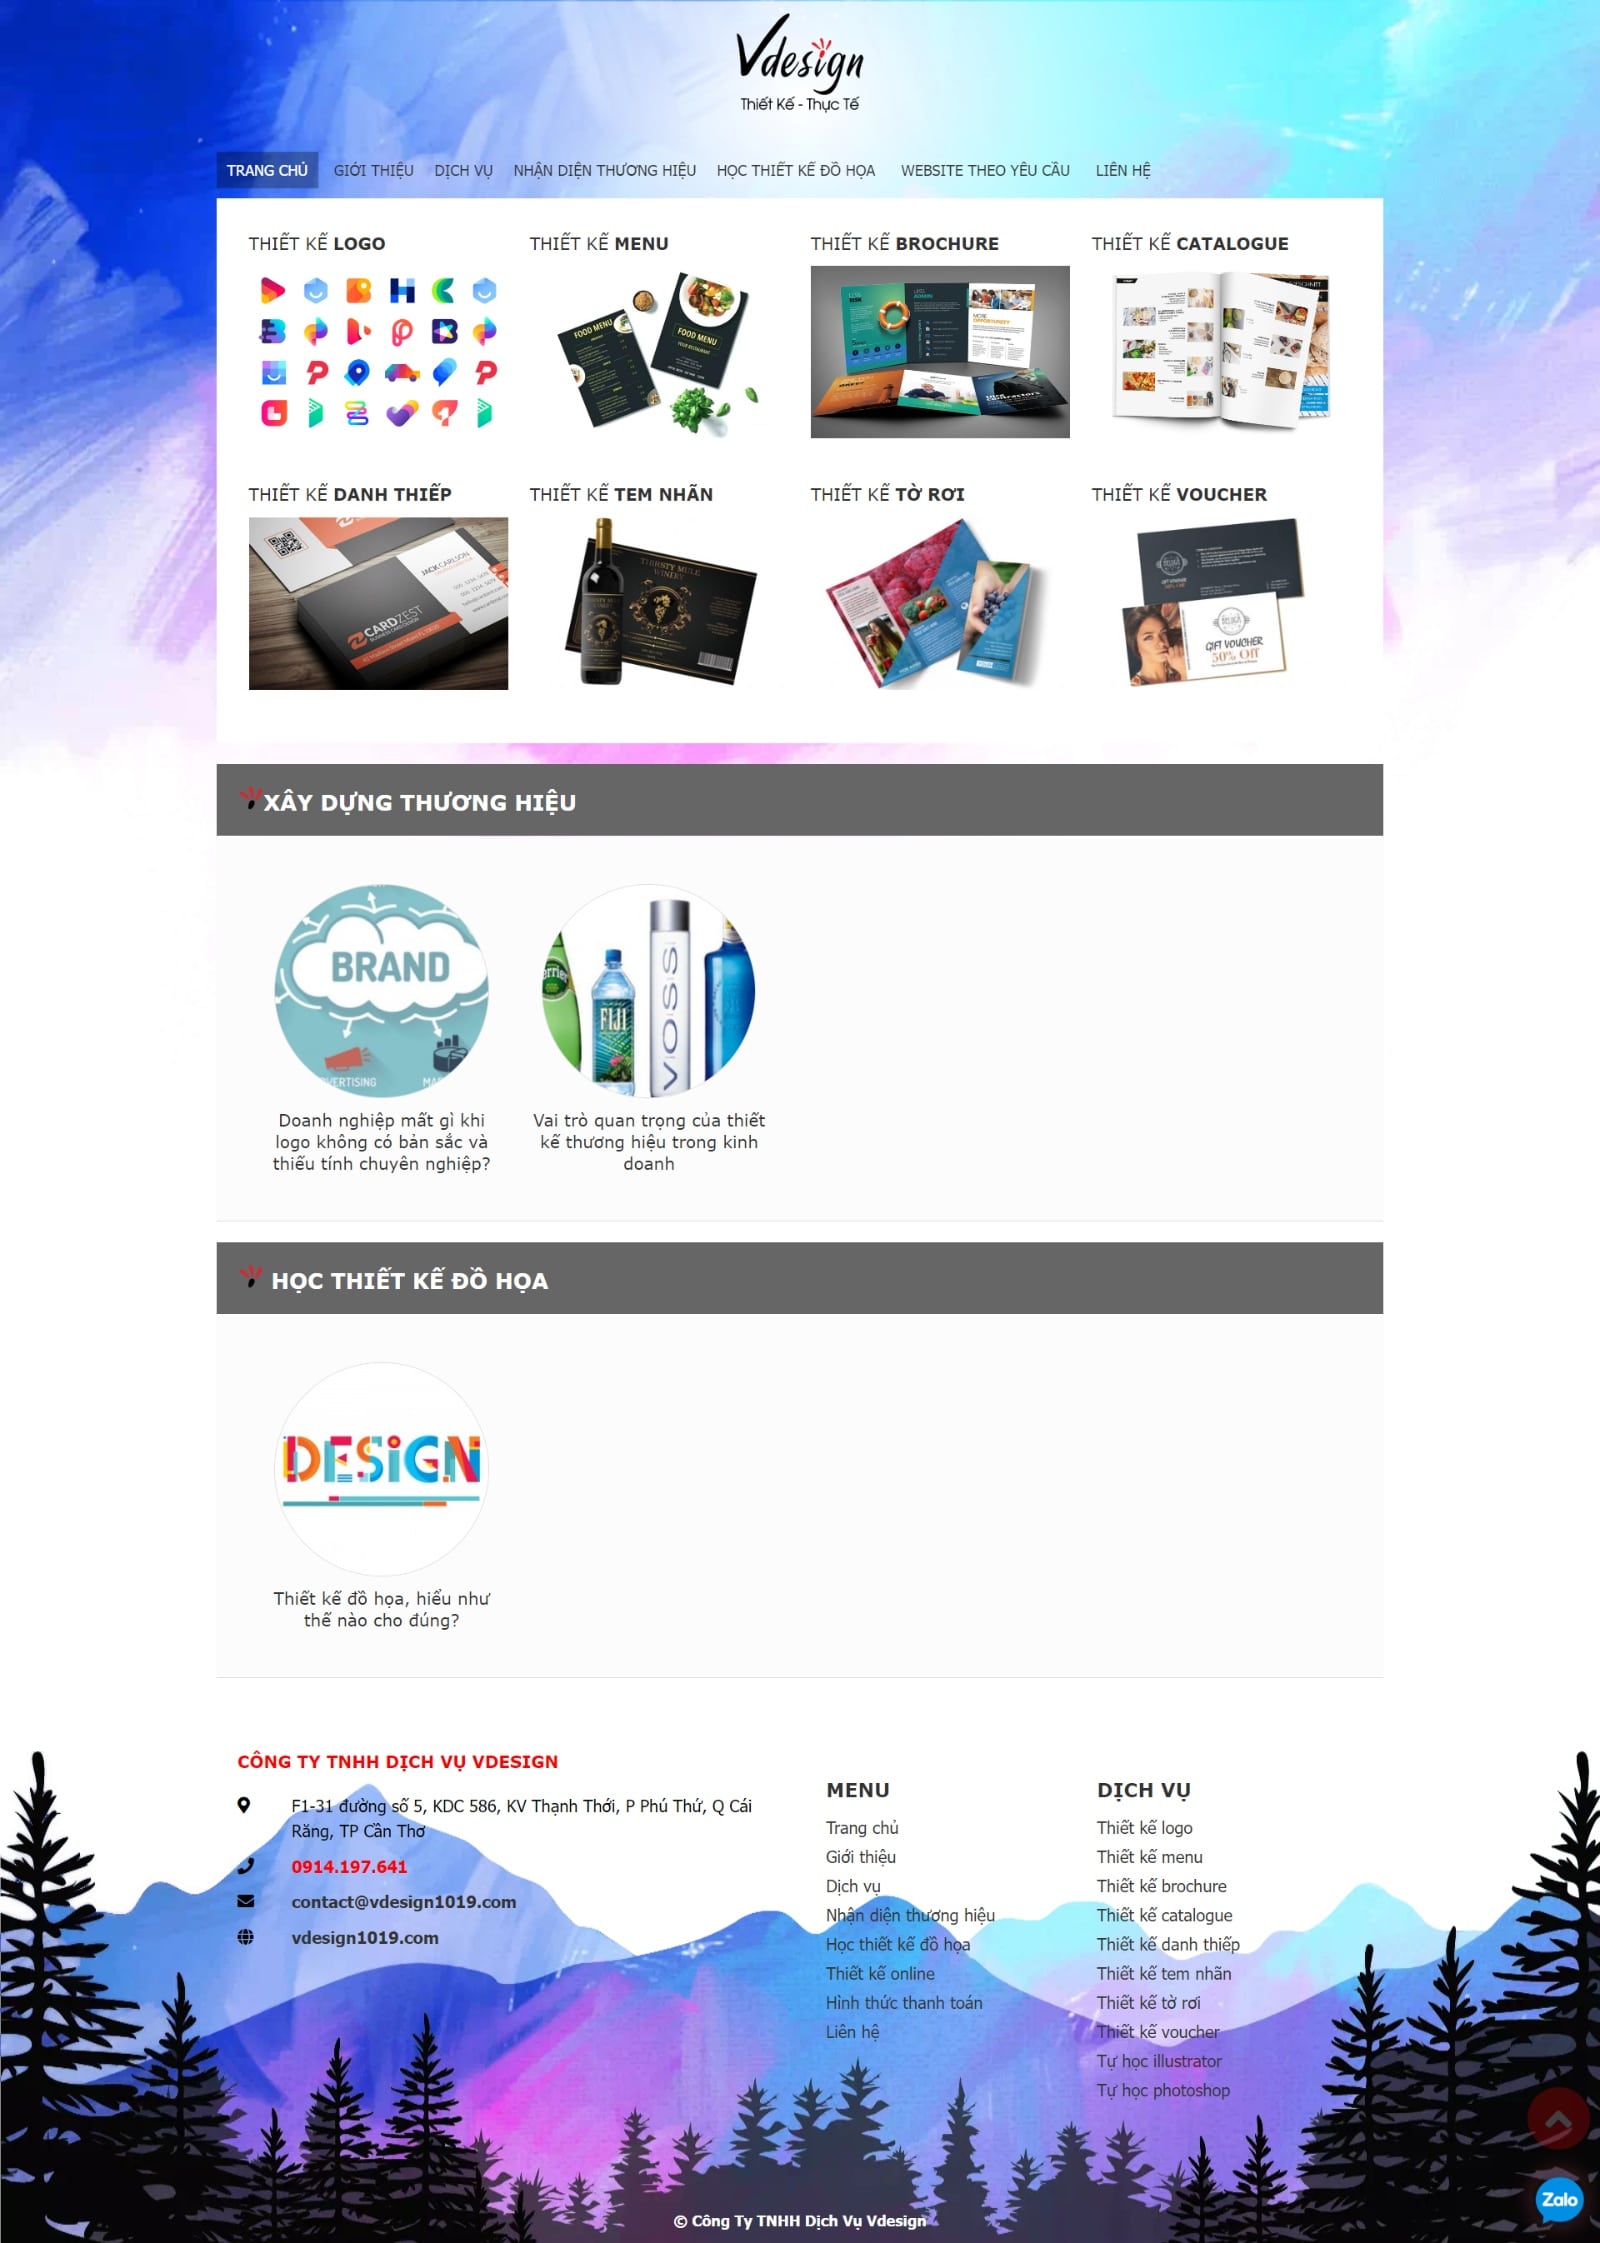 Thiết kế website công ty TNHH dịch vụ Vdesign